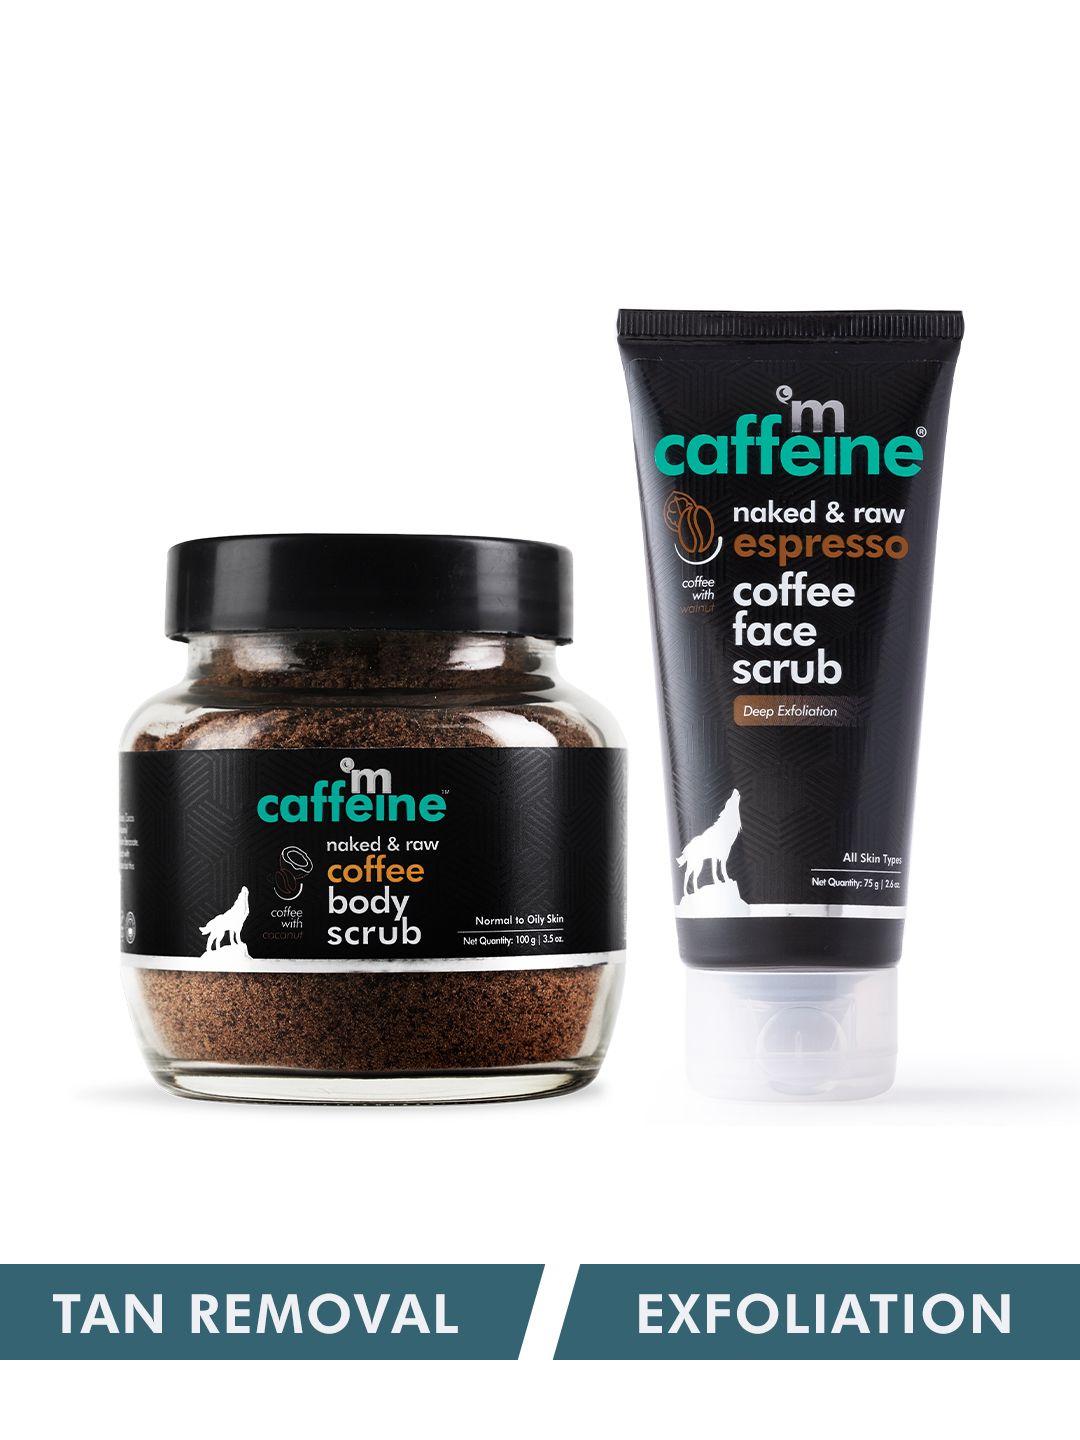 mcaffeine exfoliating coffee body scrub & espresso face scrub combo for tan removal